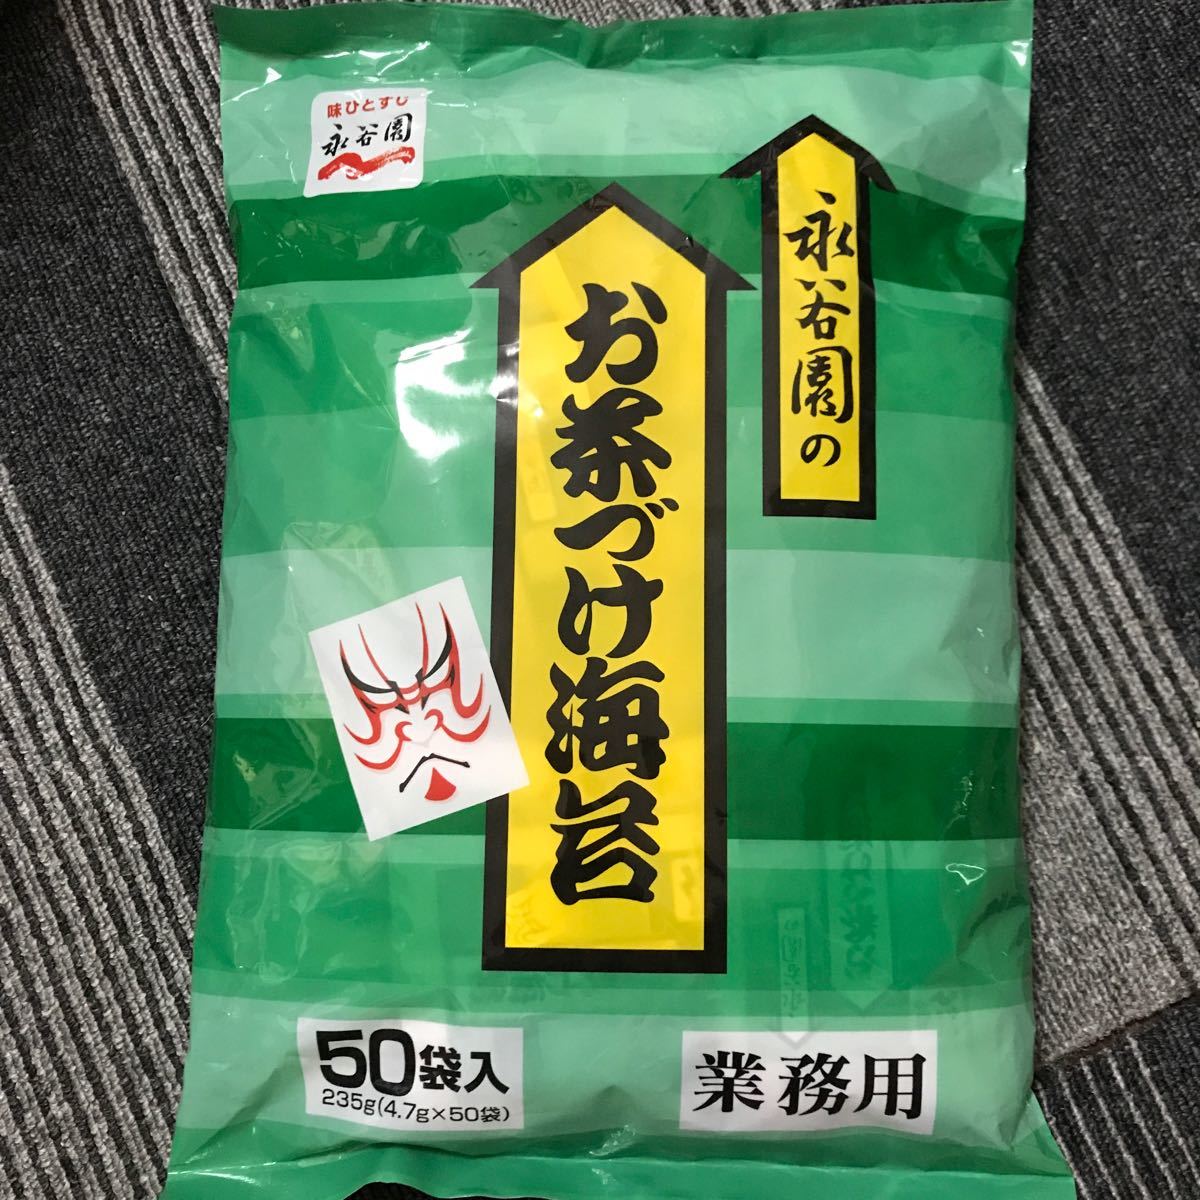 魅力的な価格 永谷園 お茶漬け 海苔 業務用 50袋入 235g 4.7g×50袋